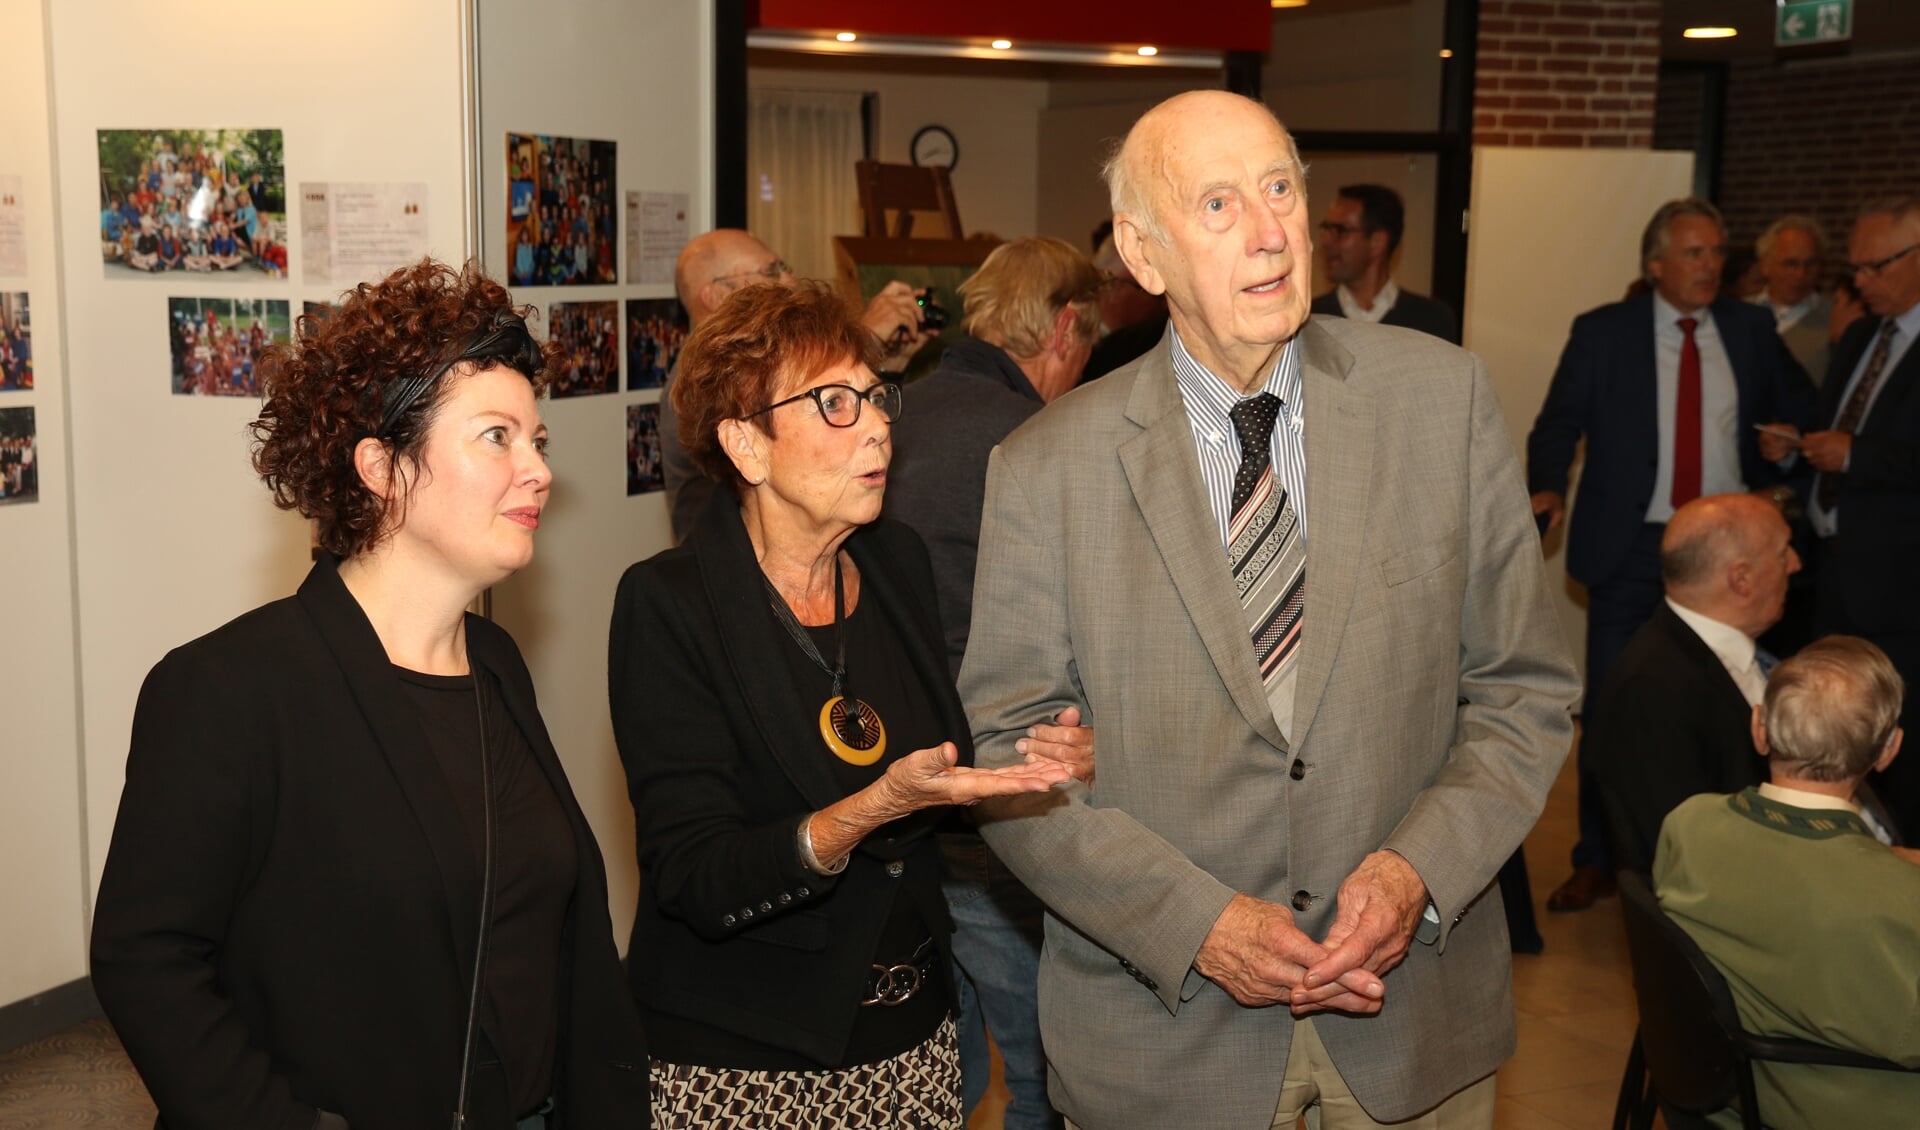 • Oud-leerling Klaas van Oort, die de school in de jaren 40 bezocht en een oud-leerlinge Gerda van Gelderen-Mesker, die in 1989 op school zat, openden beiden de expositie. 